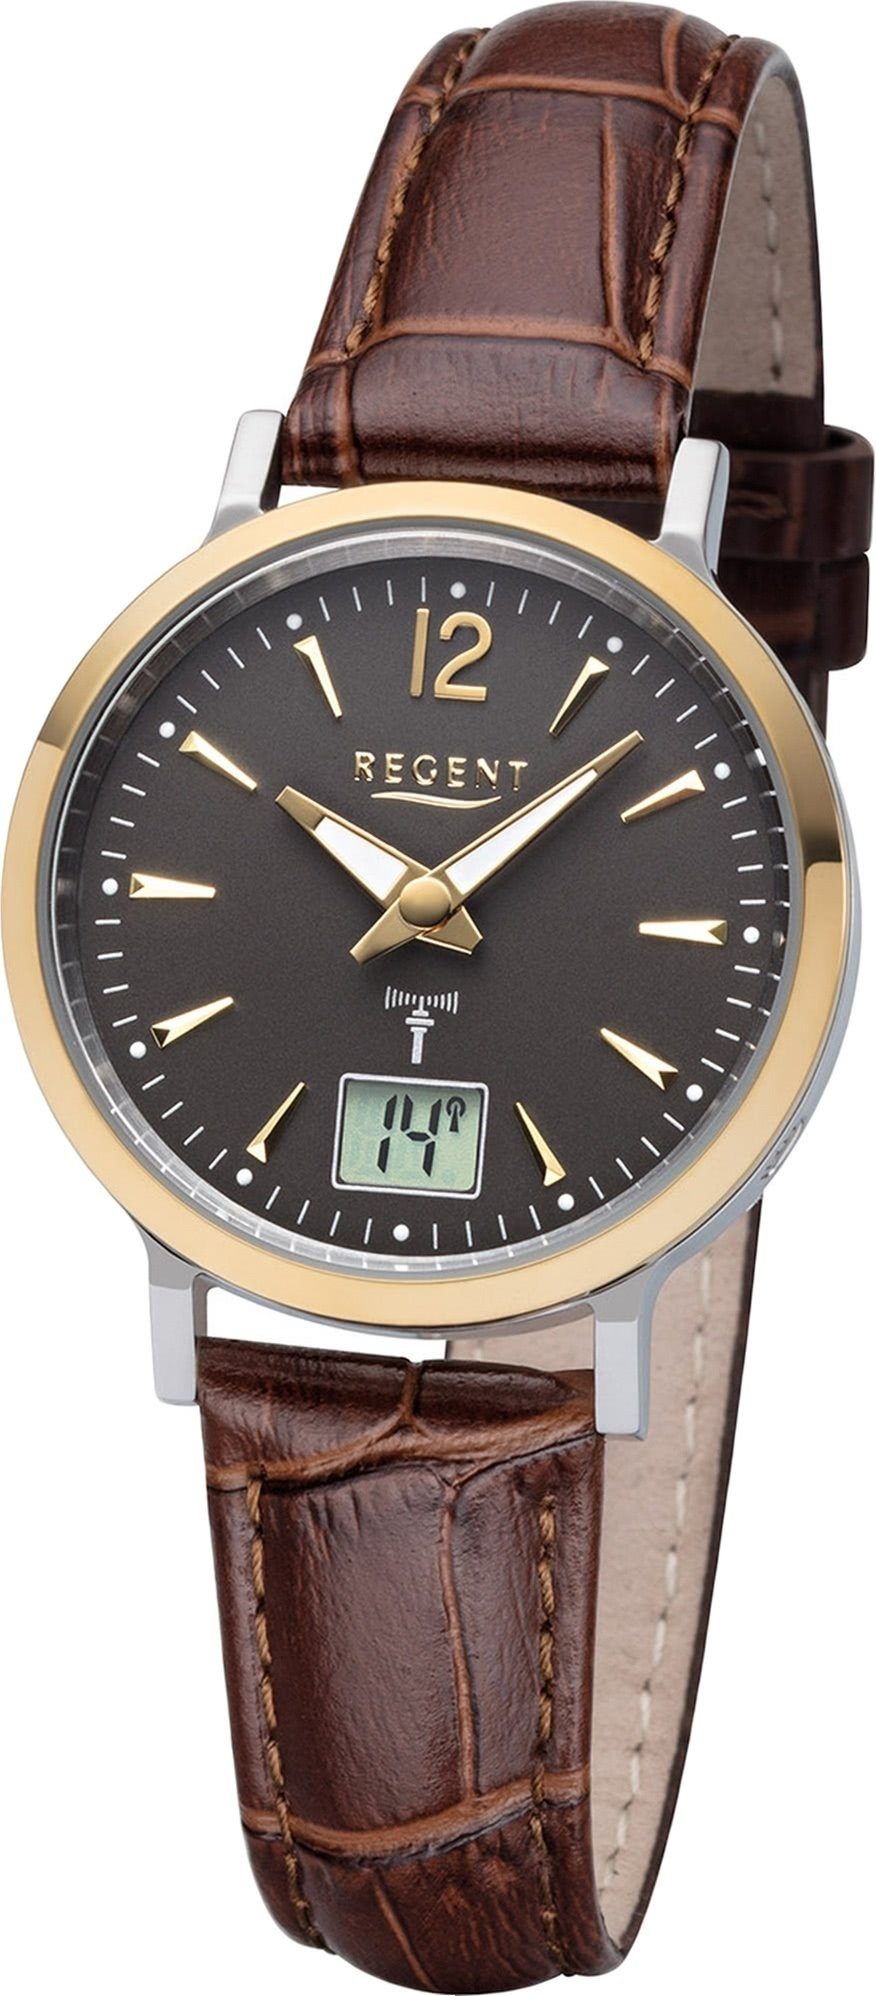 Regent Funkuhr Regent Leder Damen Uhr mit (ca. rundes Elegant-Style Gehäuse Damenuhr 30mm), FR-257, Lederarmband